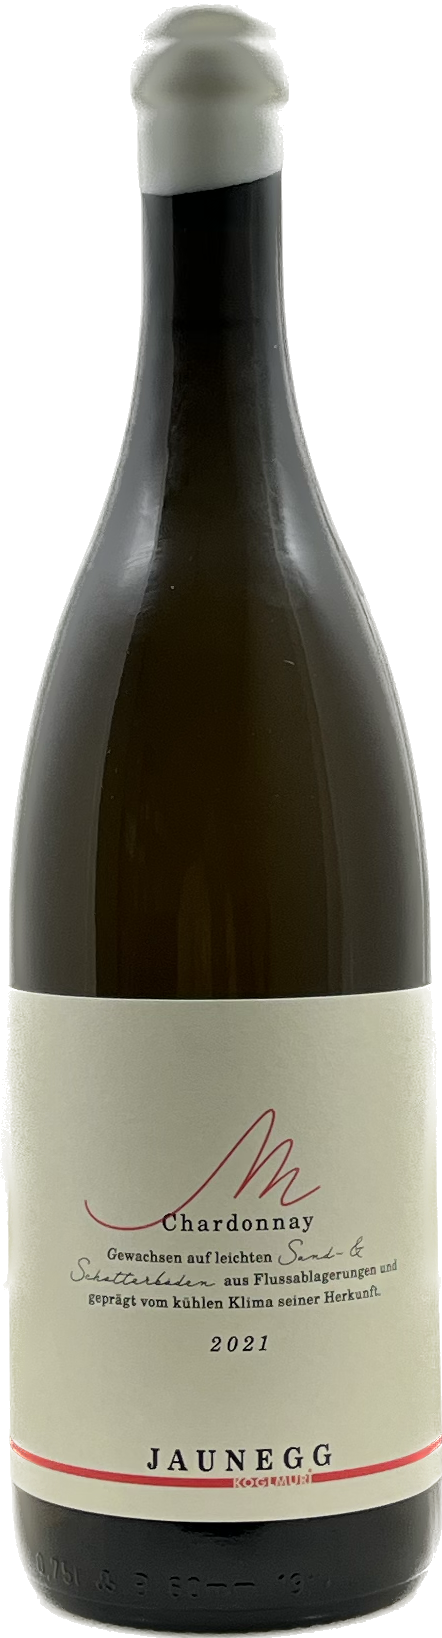 Chardonnay  Sand & Schotter  - Weingut Jaunegg 2021